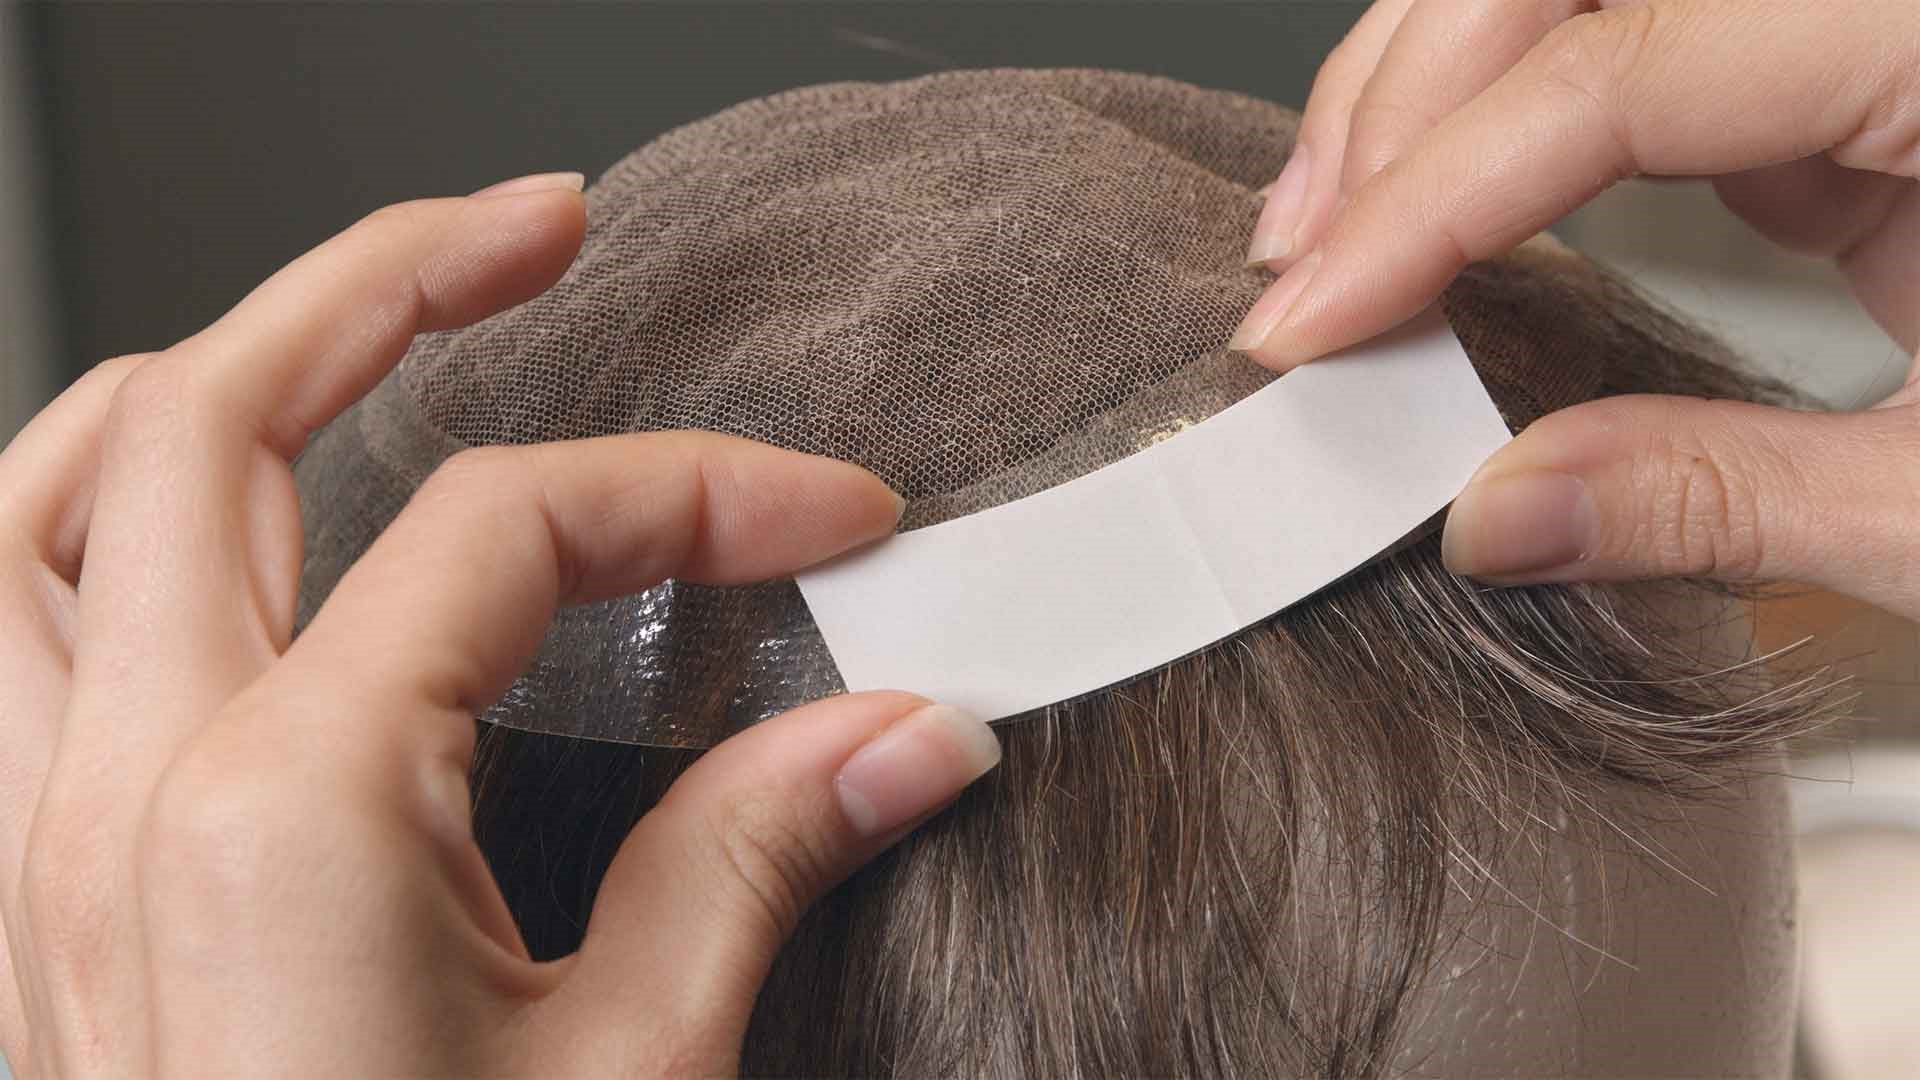 Protez Saç Uygulaması 3. Adım | Protez Saç Nasıl Bantlanır?